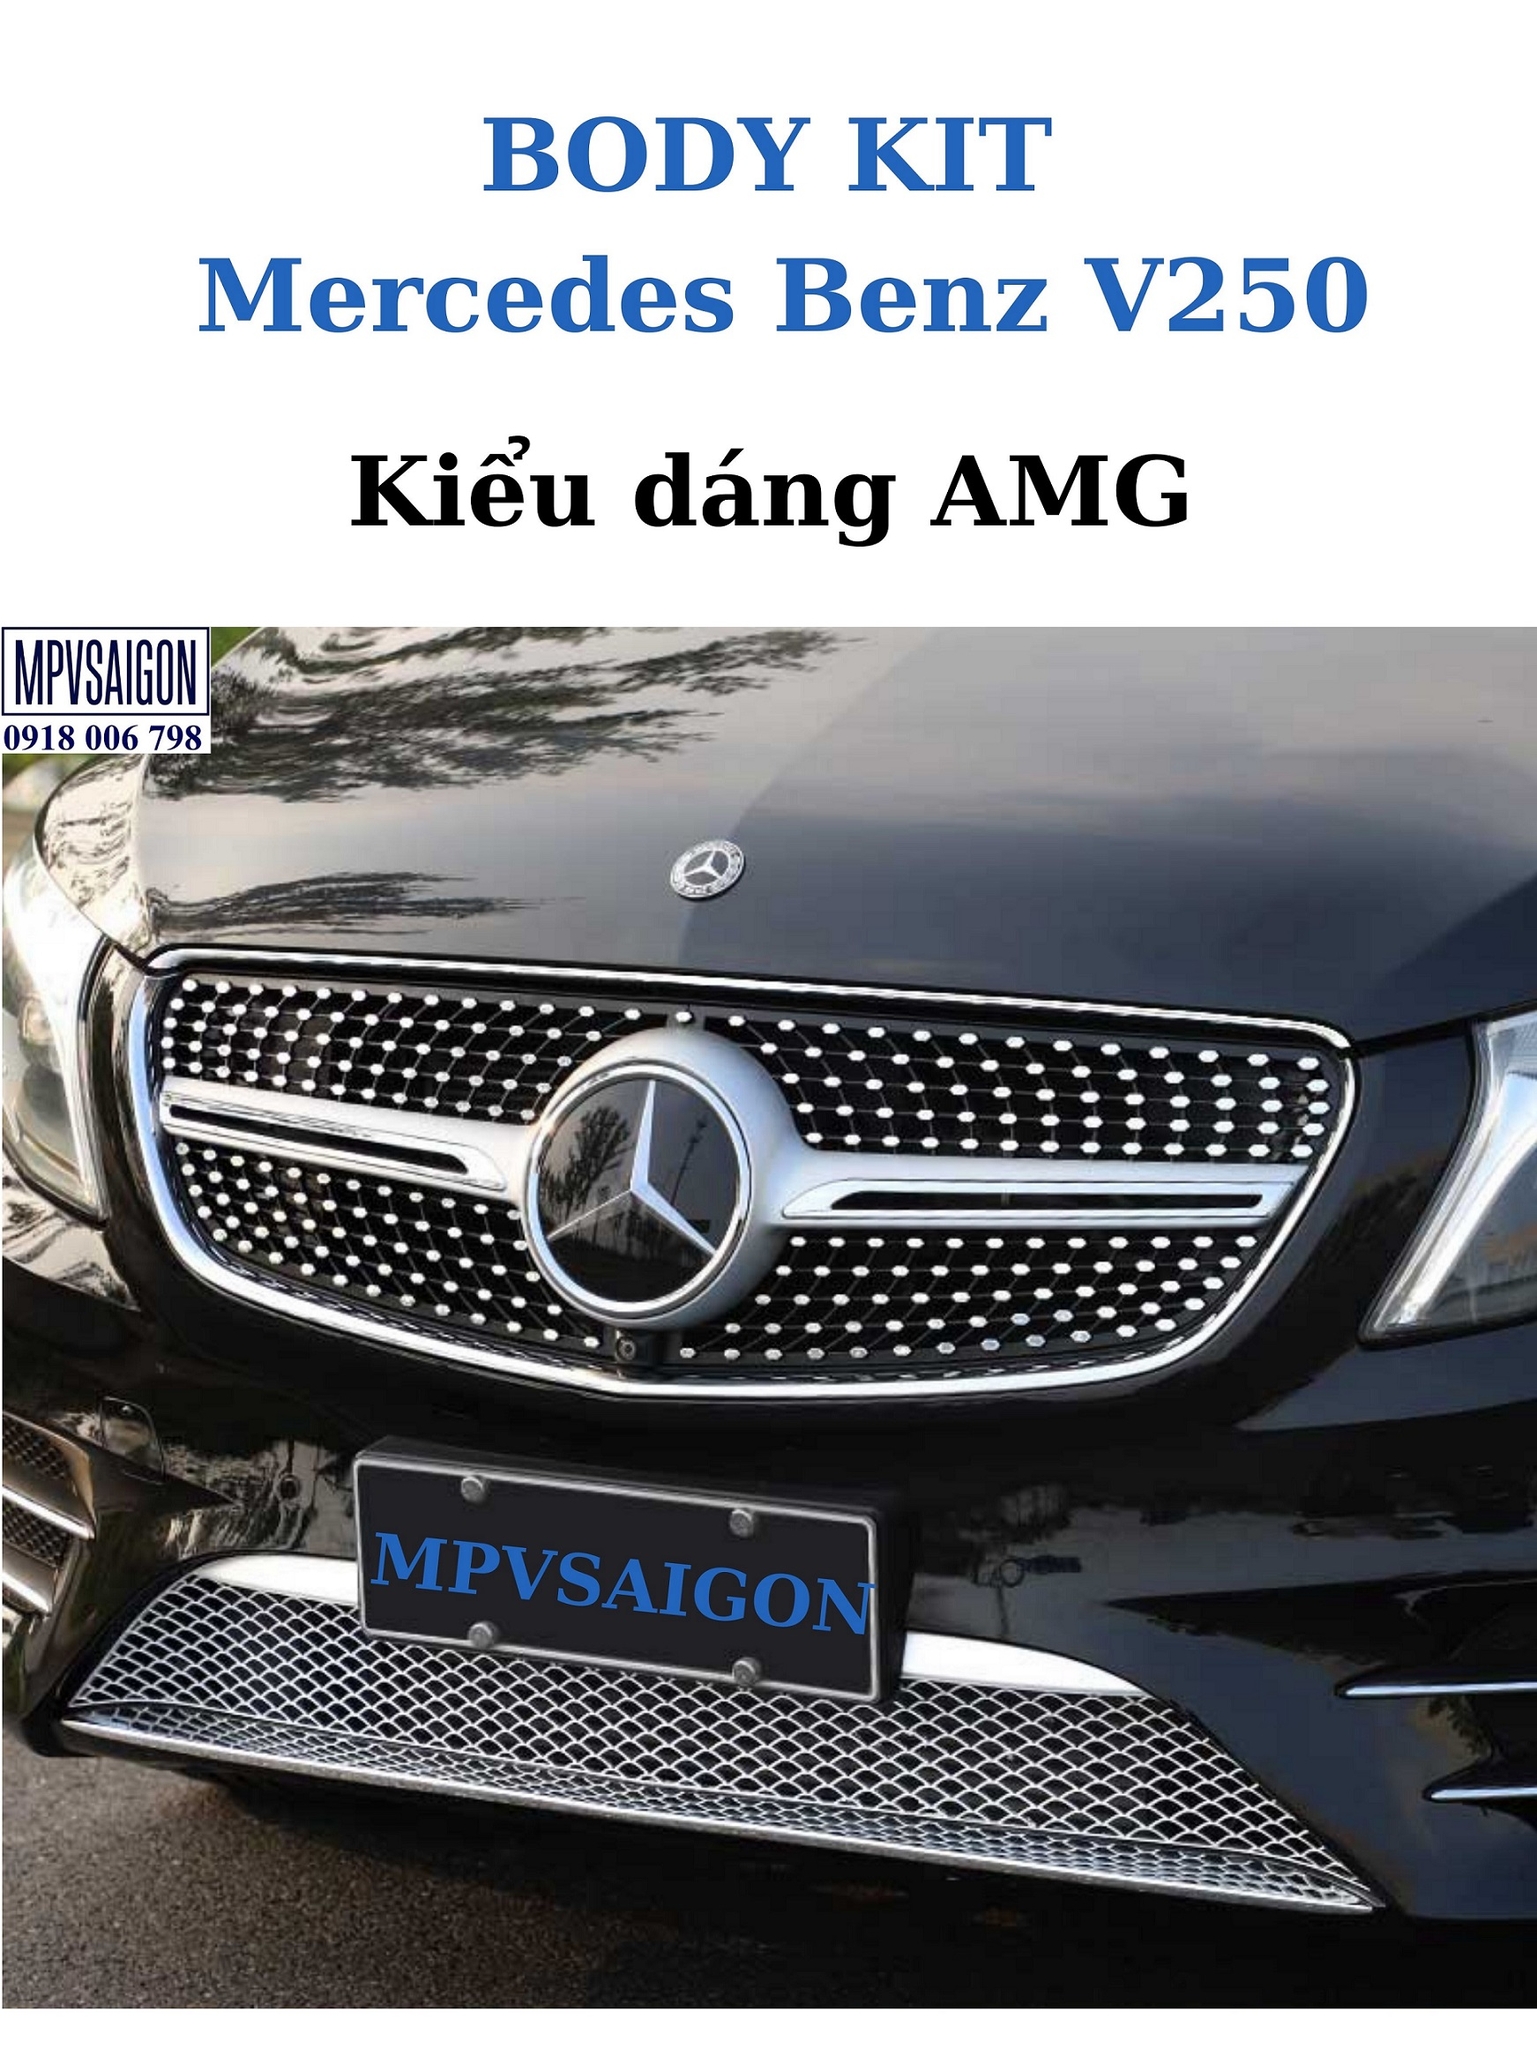 Body kit Mercedes Benz V250